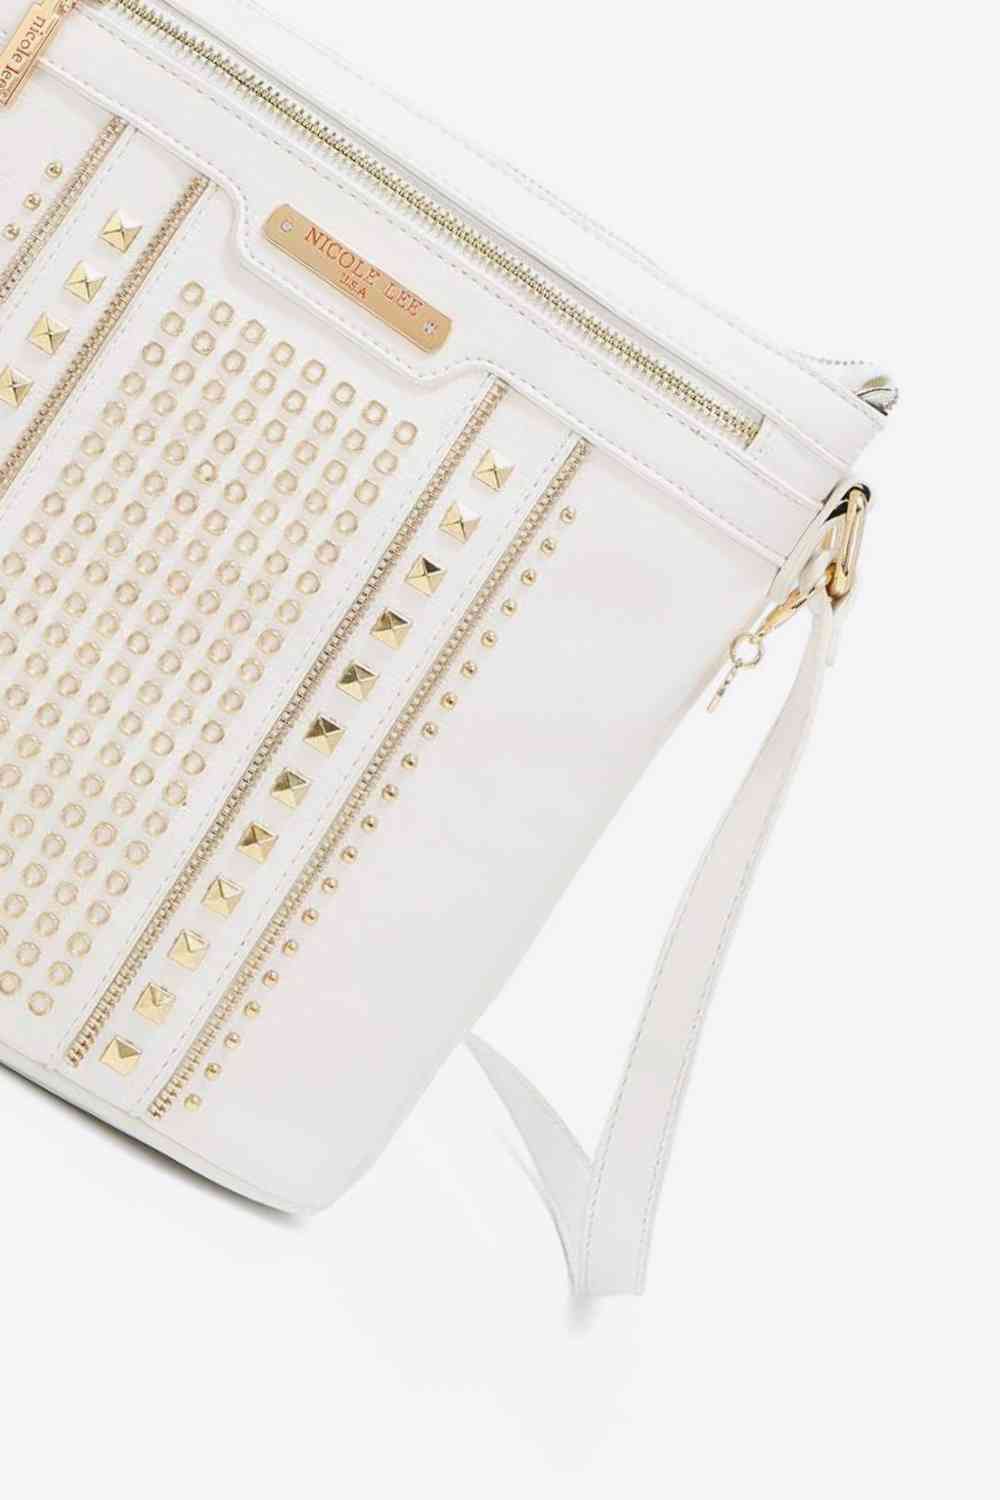 The802Gypsy Handbags, Wallets & Cases GYPSY-Nicole Lee USA-Handbag